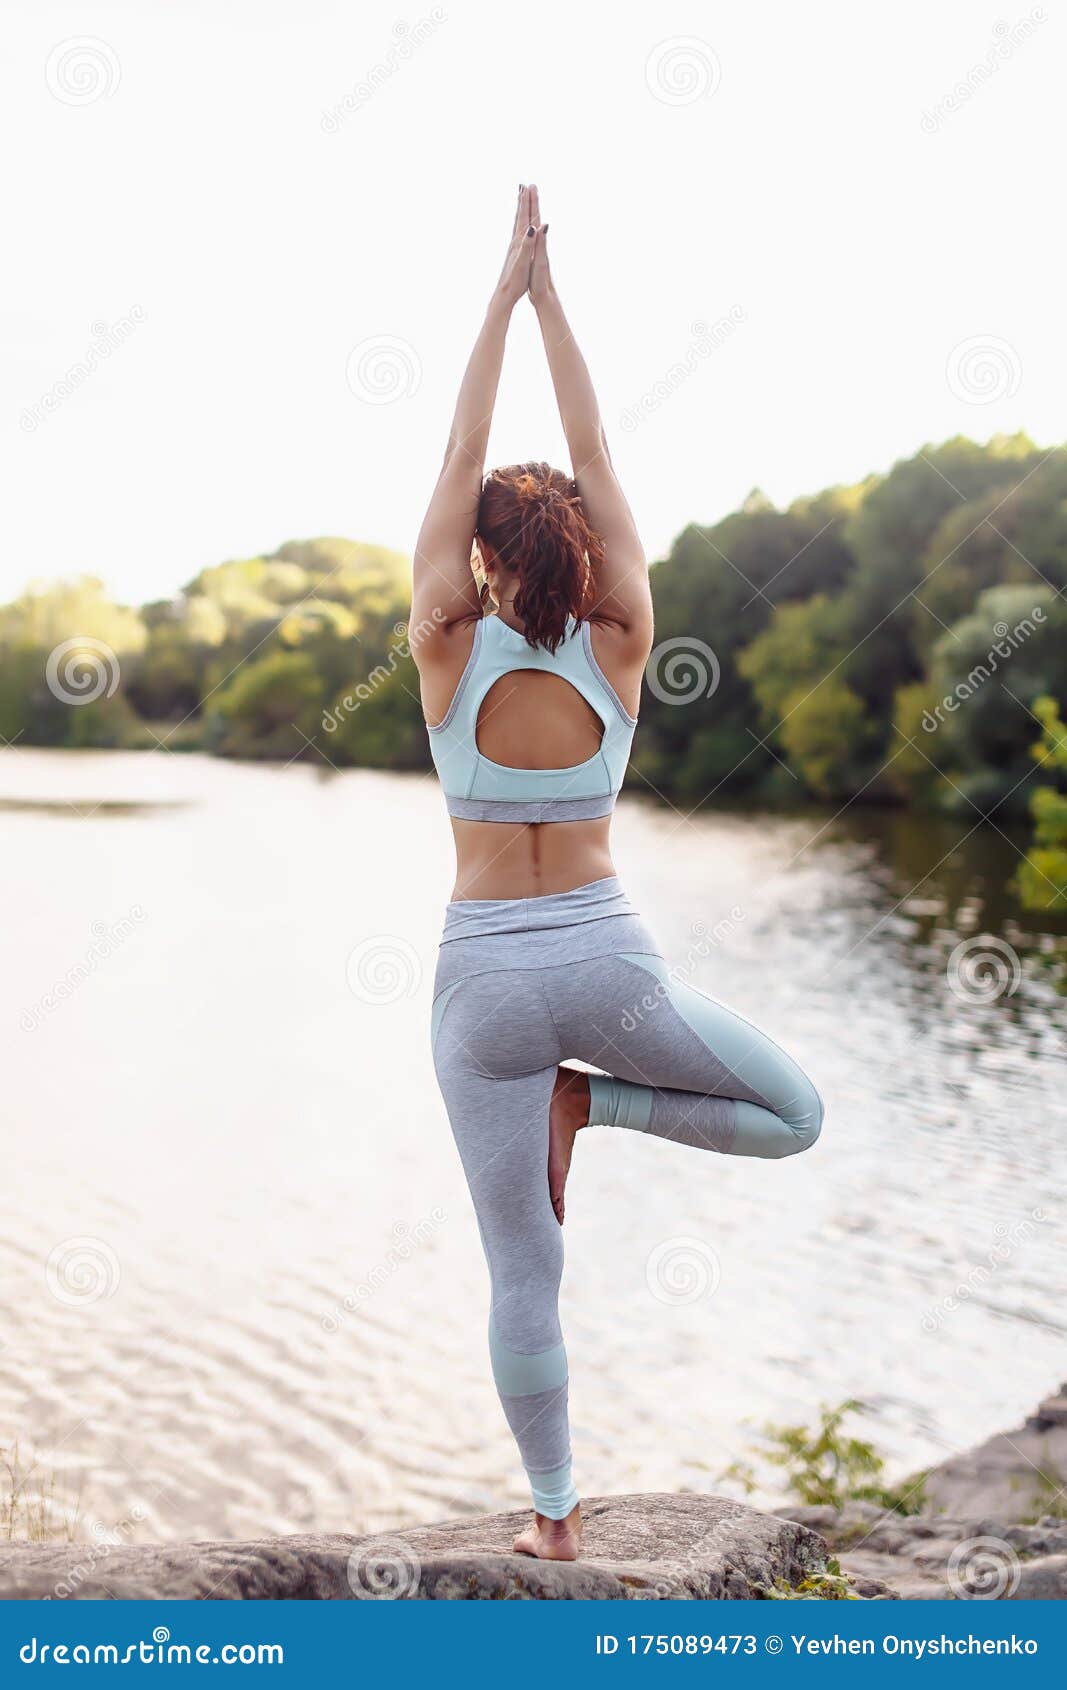 Sexy Yoga Photos